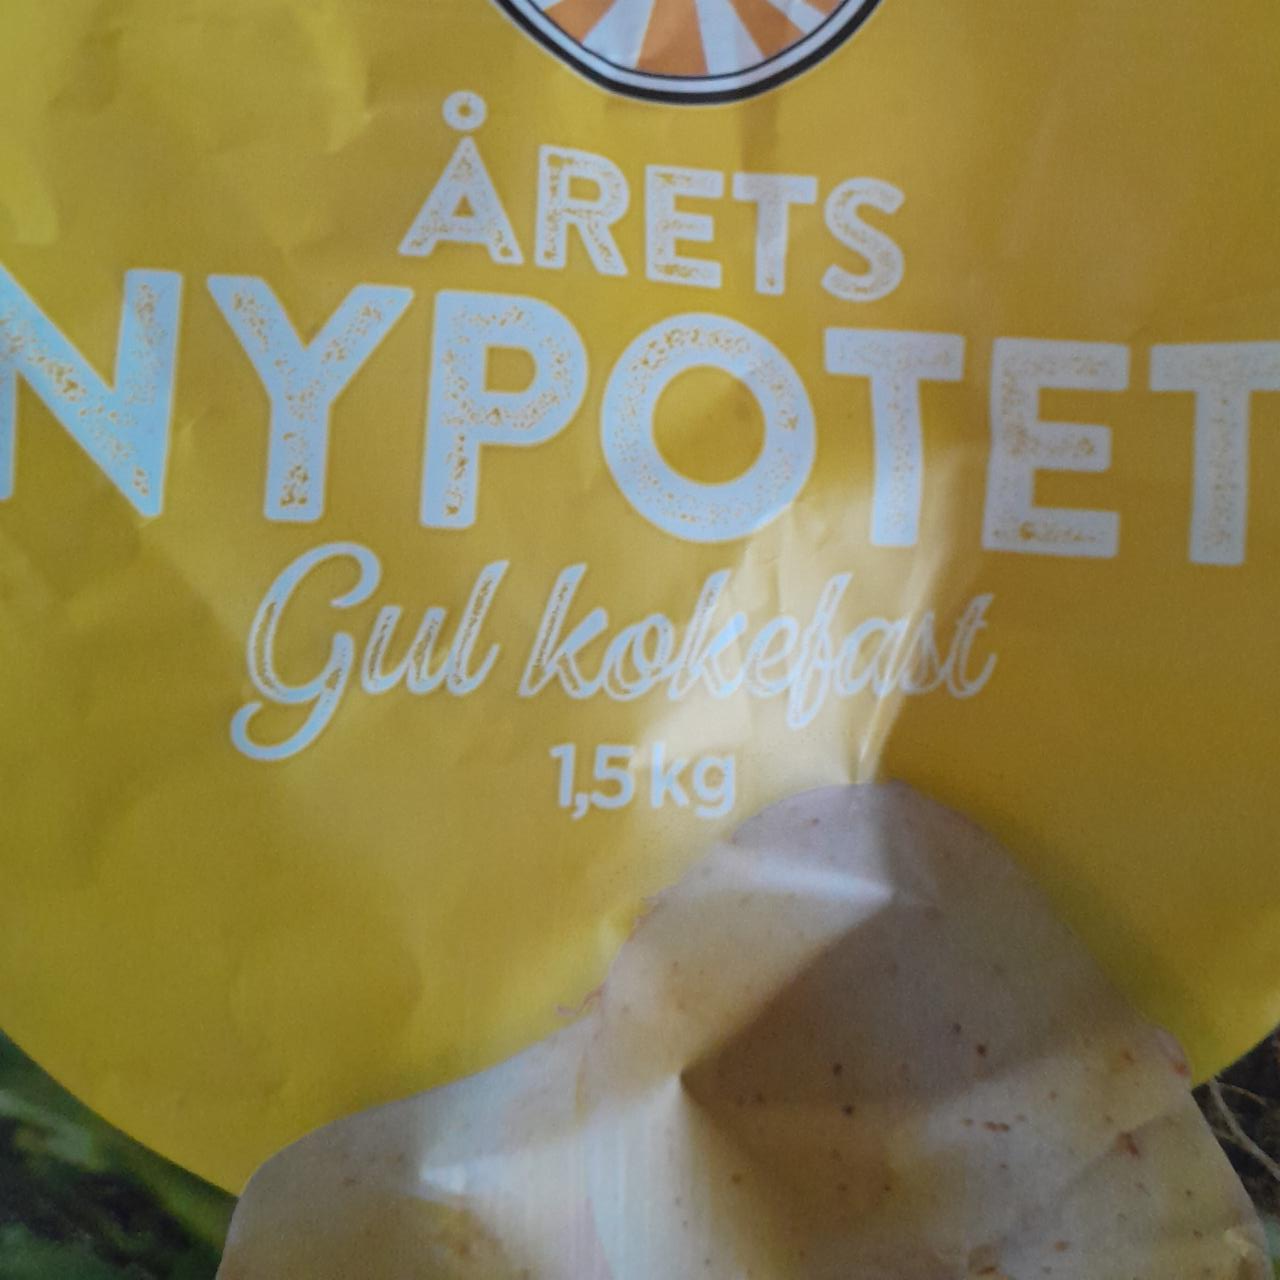 Фото - картофель сырой årets nypotet Gartner